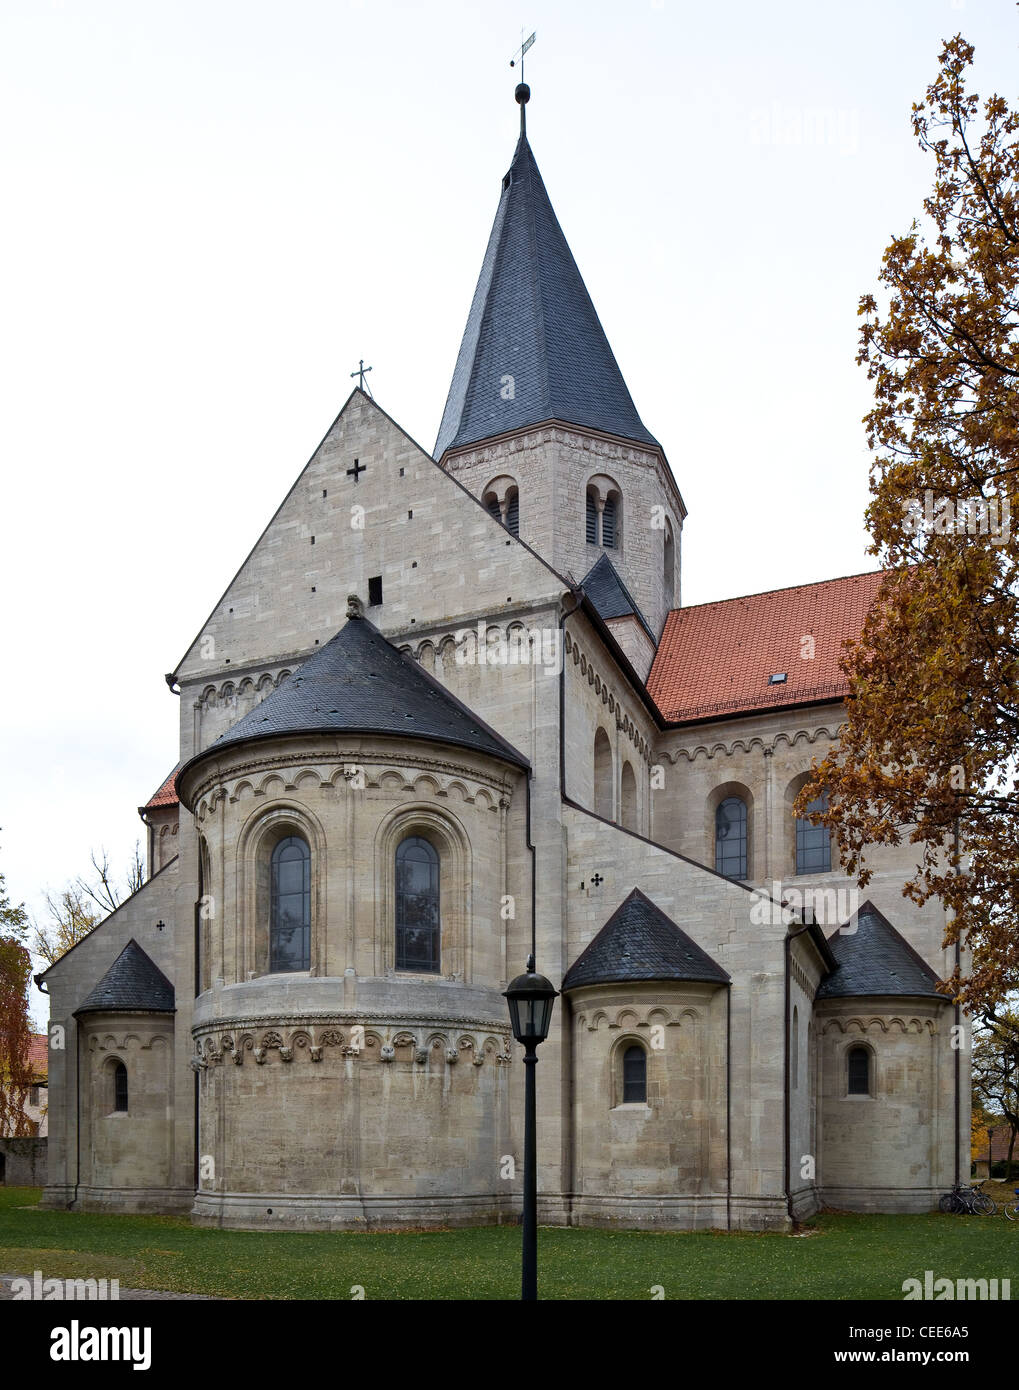 Königslutter am Elm, Stiftskirche (Kaiserdom) Stock Photo